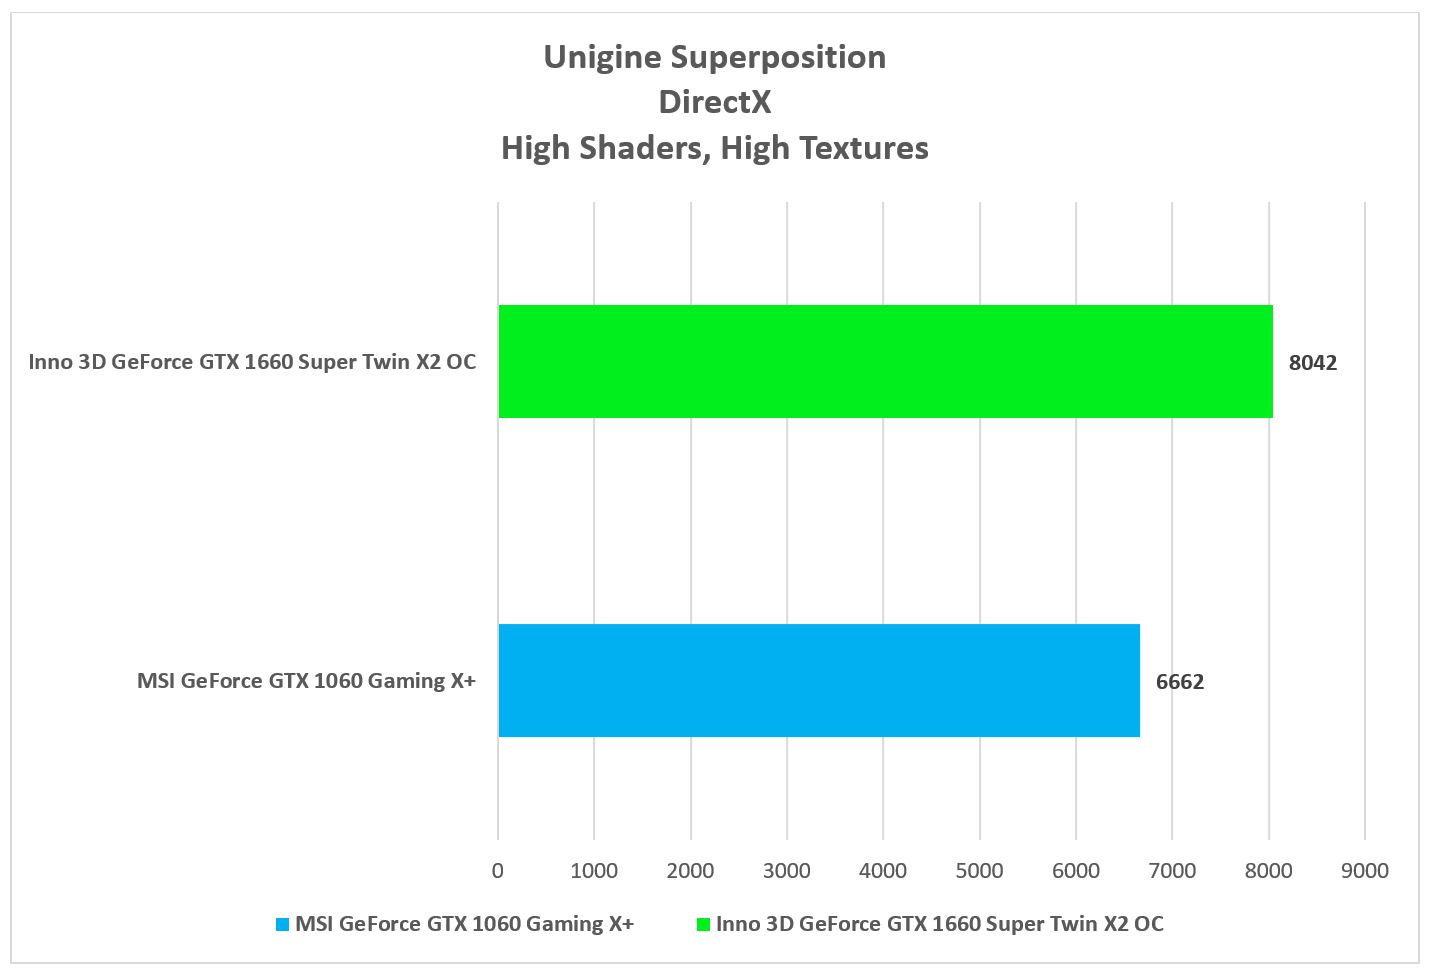 Inno 3D GeForce GTX 1660 Super Twin X2 OC Unigine Superposition